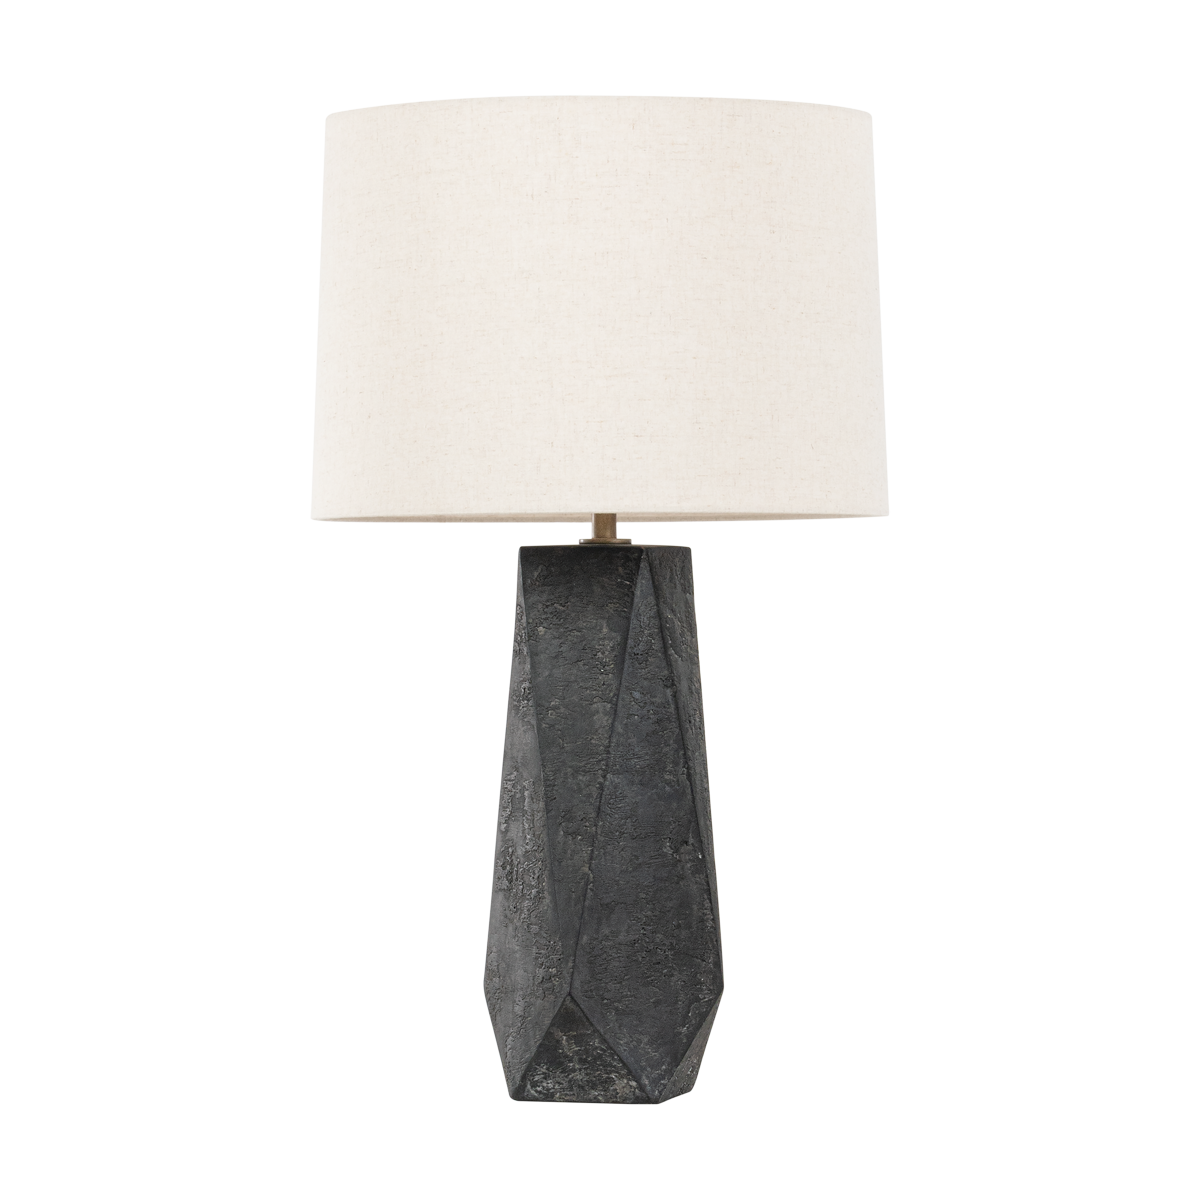 Troy Lighting Coronado Table Lamp